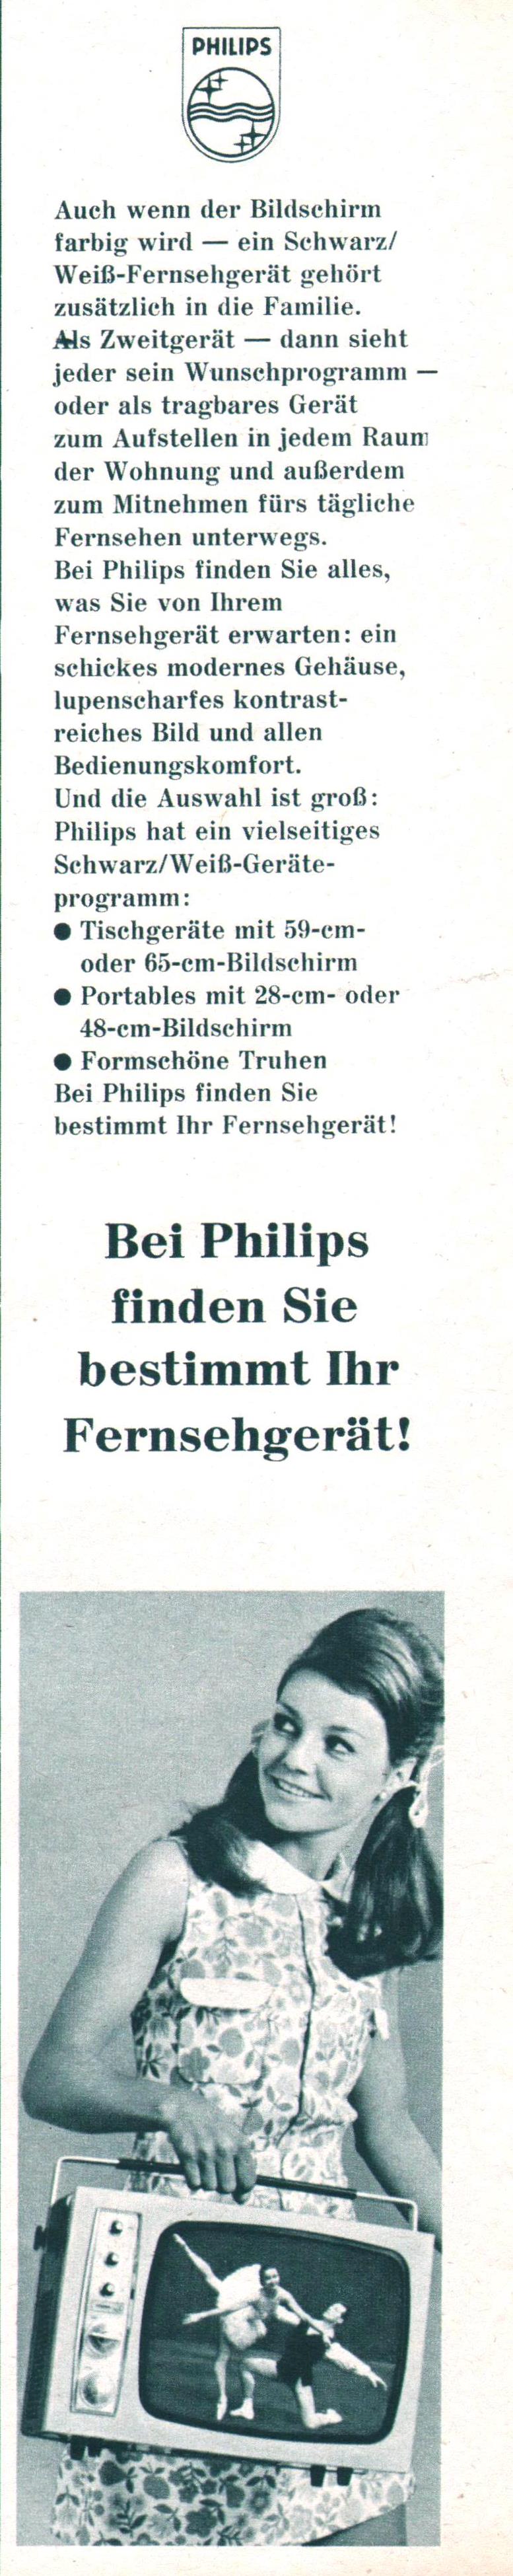 Philips 1967 1.jpg